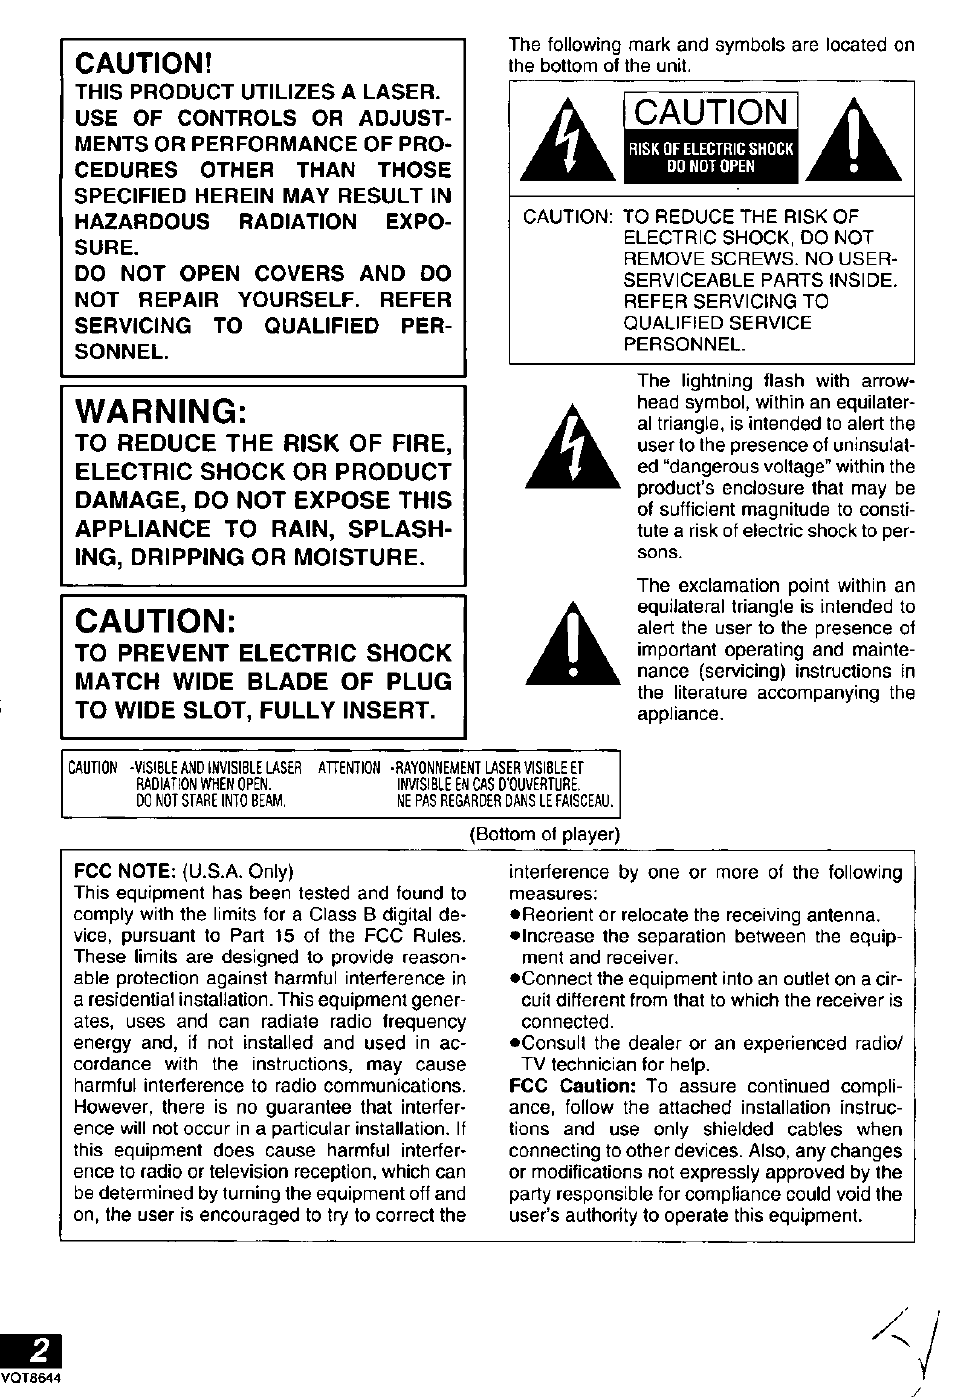 Caution | Panasonic DVD-PV55 Manuel d'utilisation | Page 2 / 92